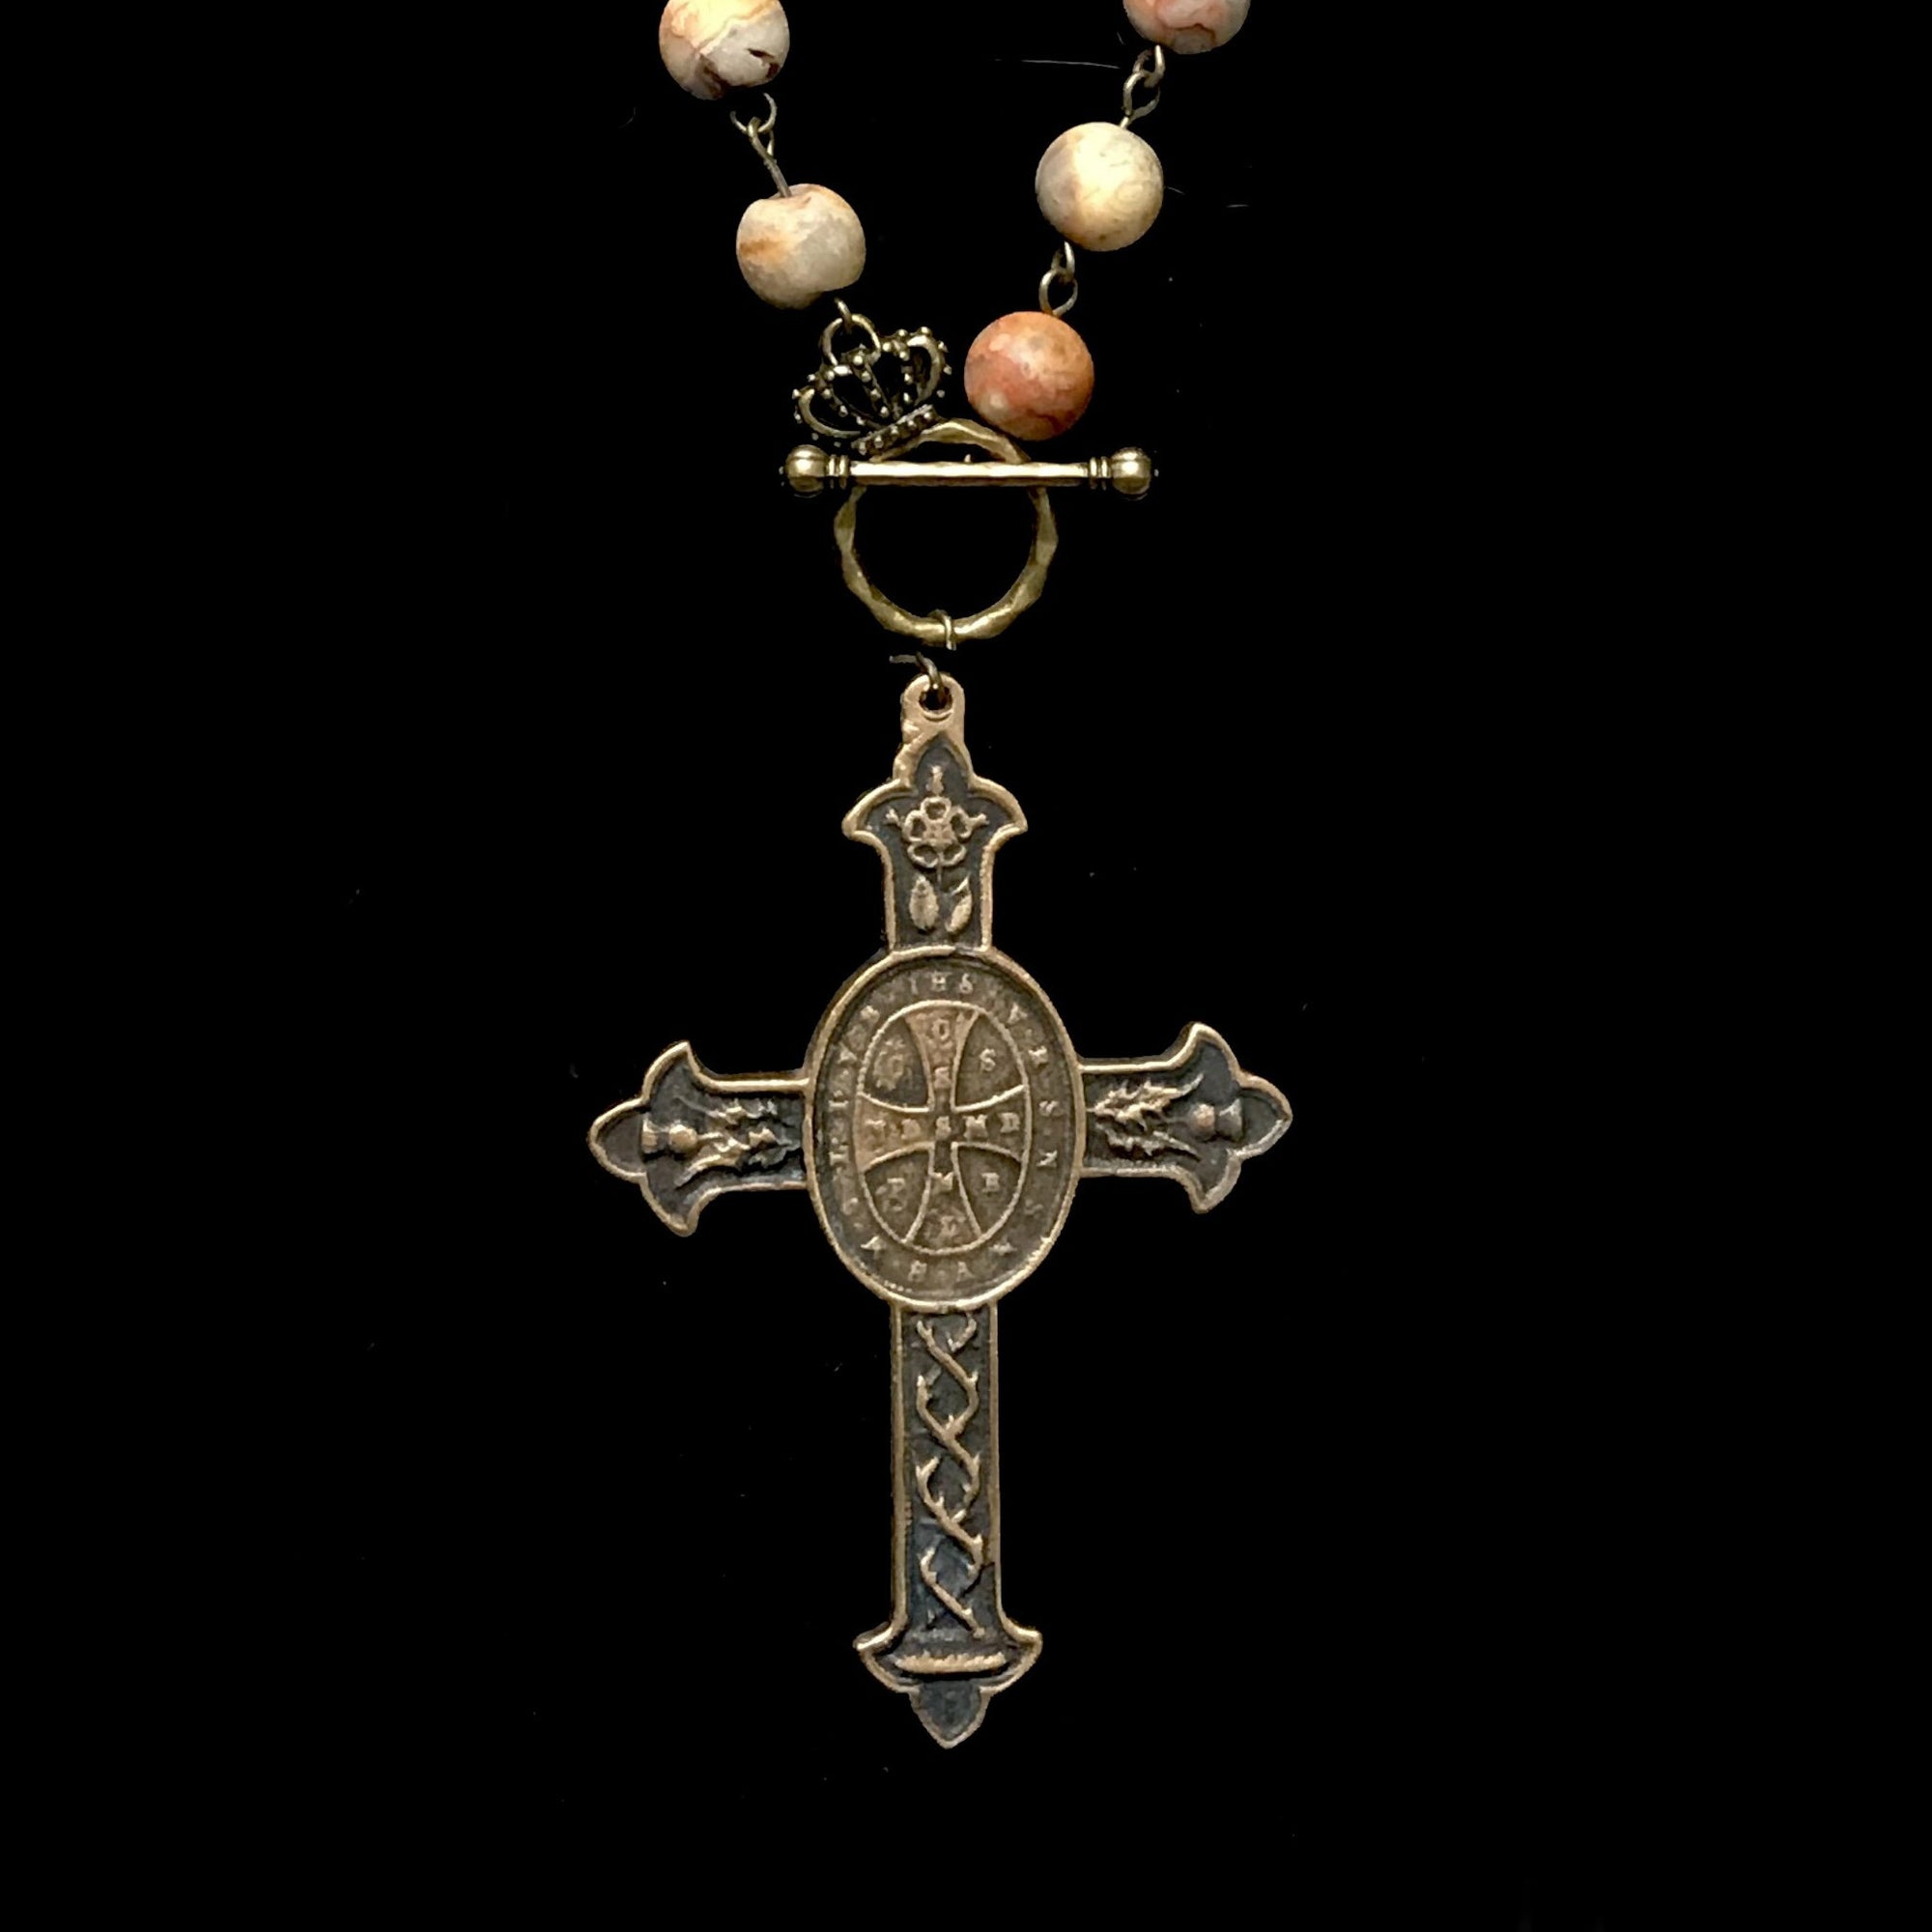 Saint Benedict Cross Crazy Lace Agate & Matte Moonstone